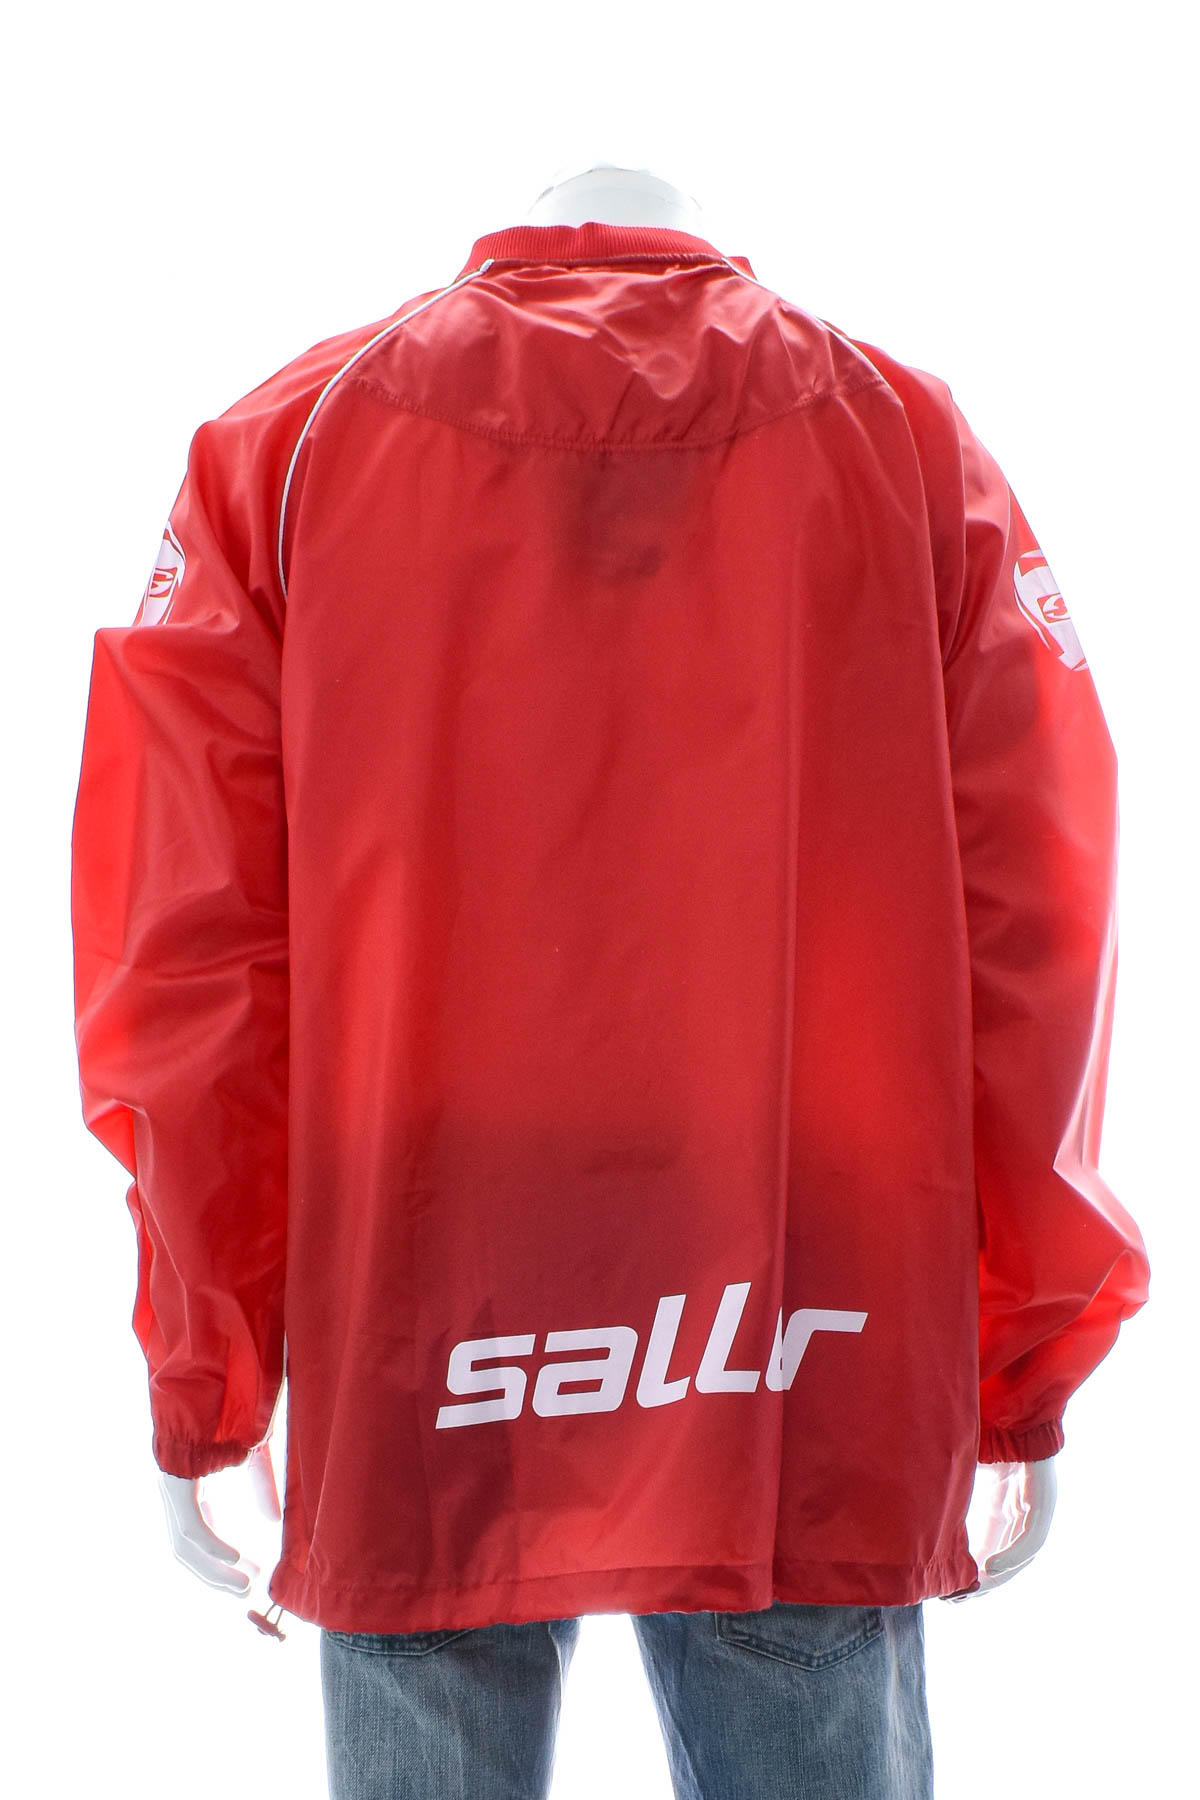 Men's jacket - Saller - 1